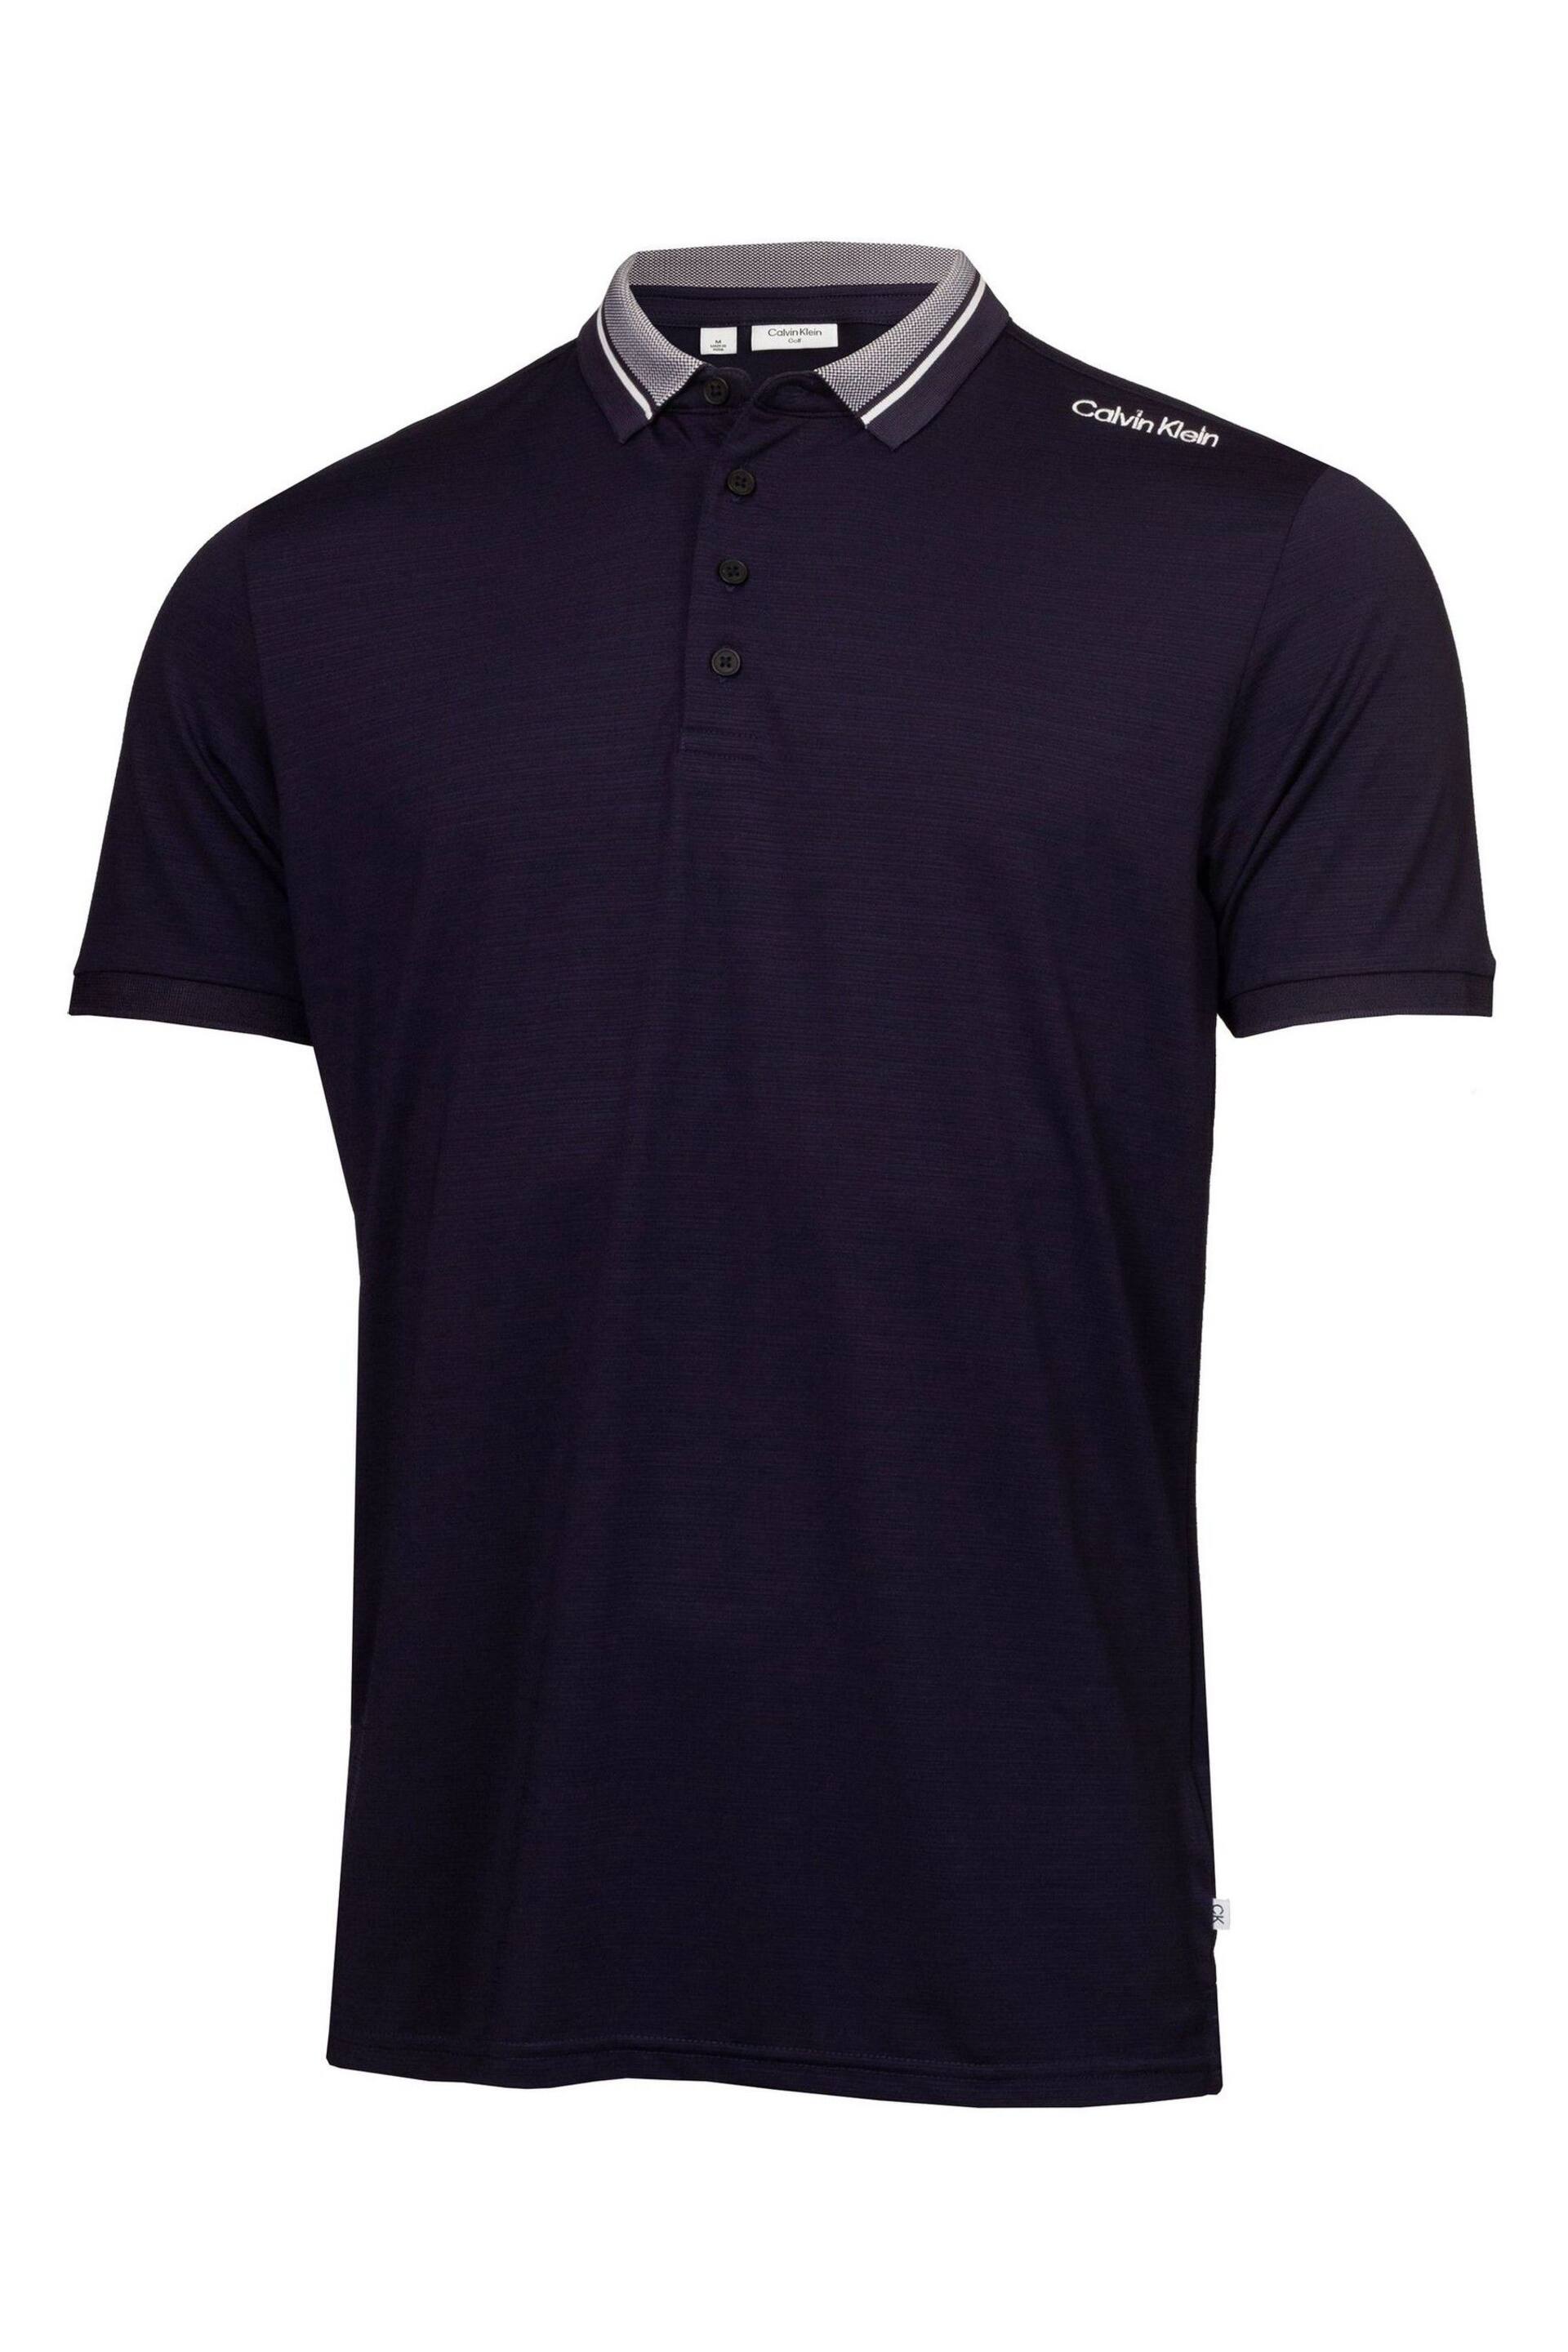 Calvin Klein Golf Navy Parramore Polo Shirt - Image 4 of 7